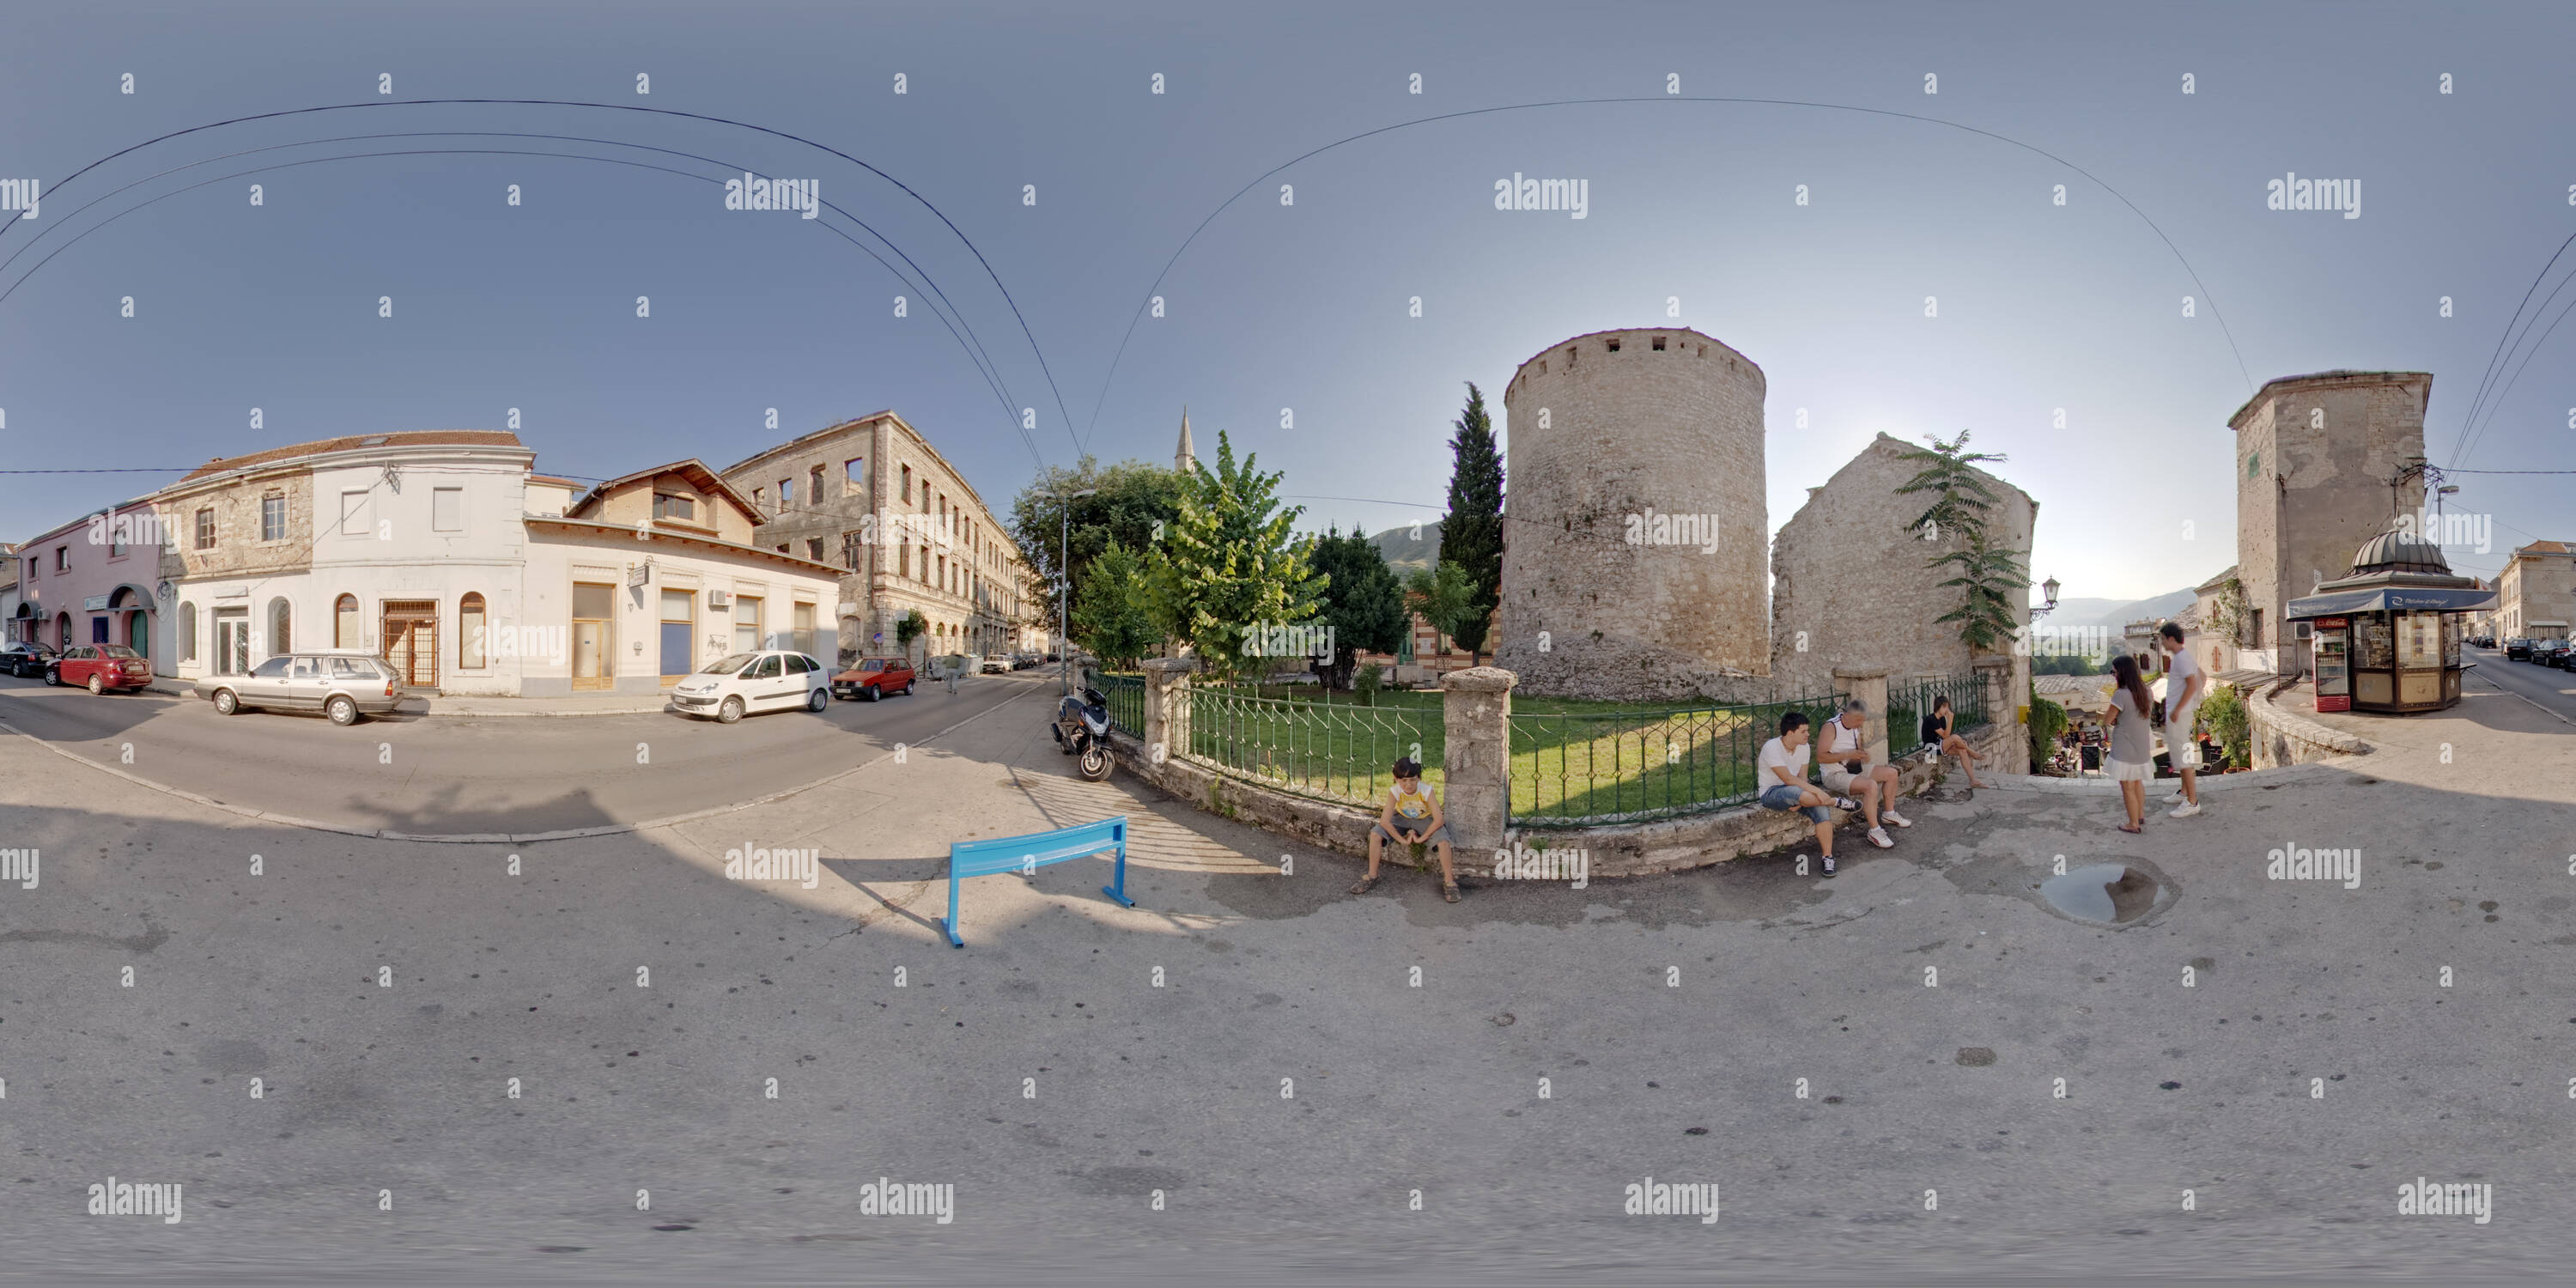 360 degree panoramic view of Mostar / BiH